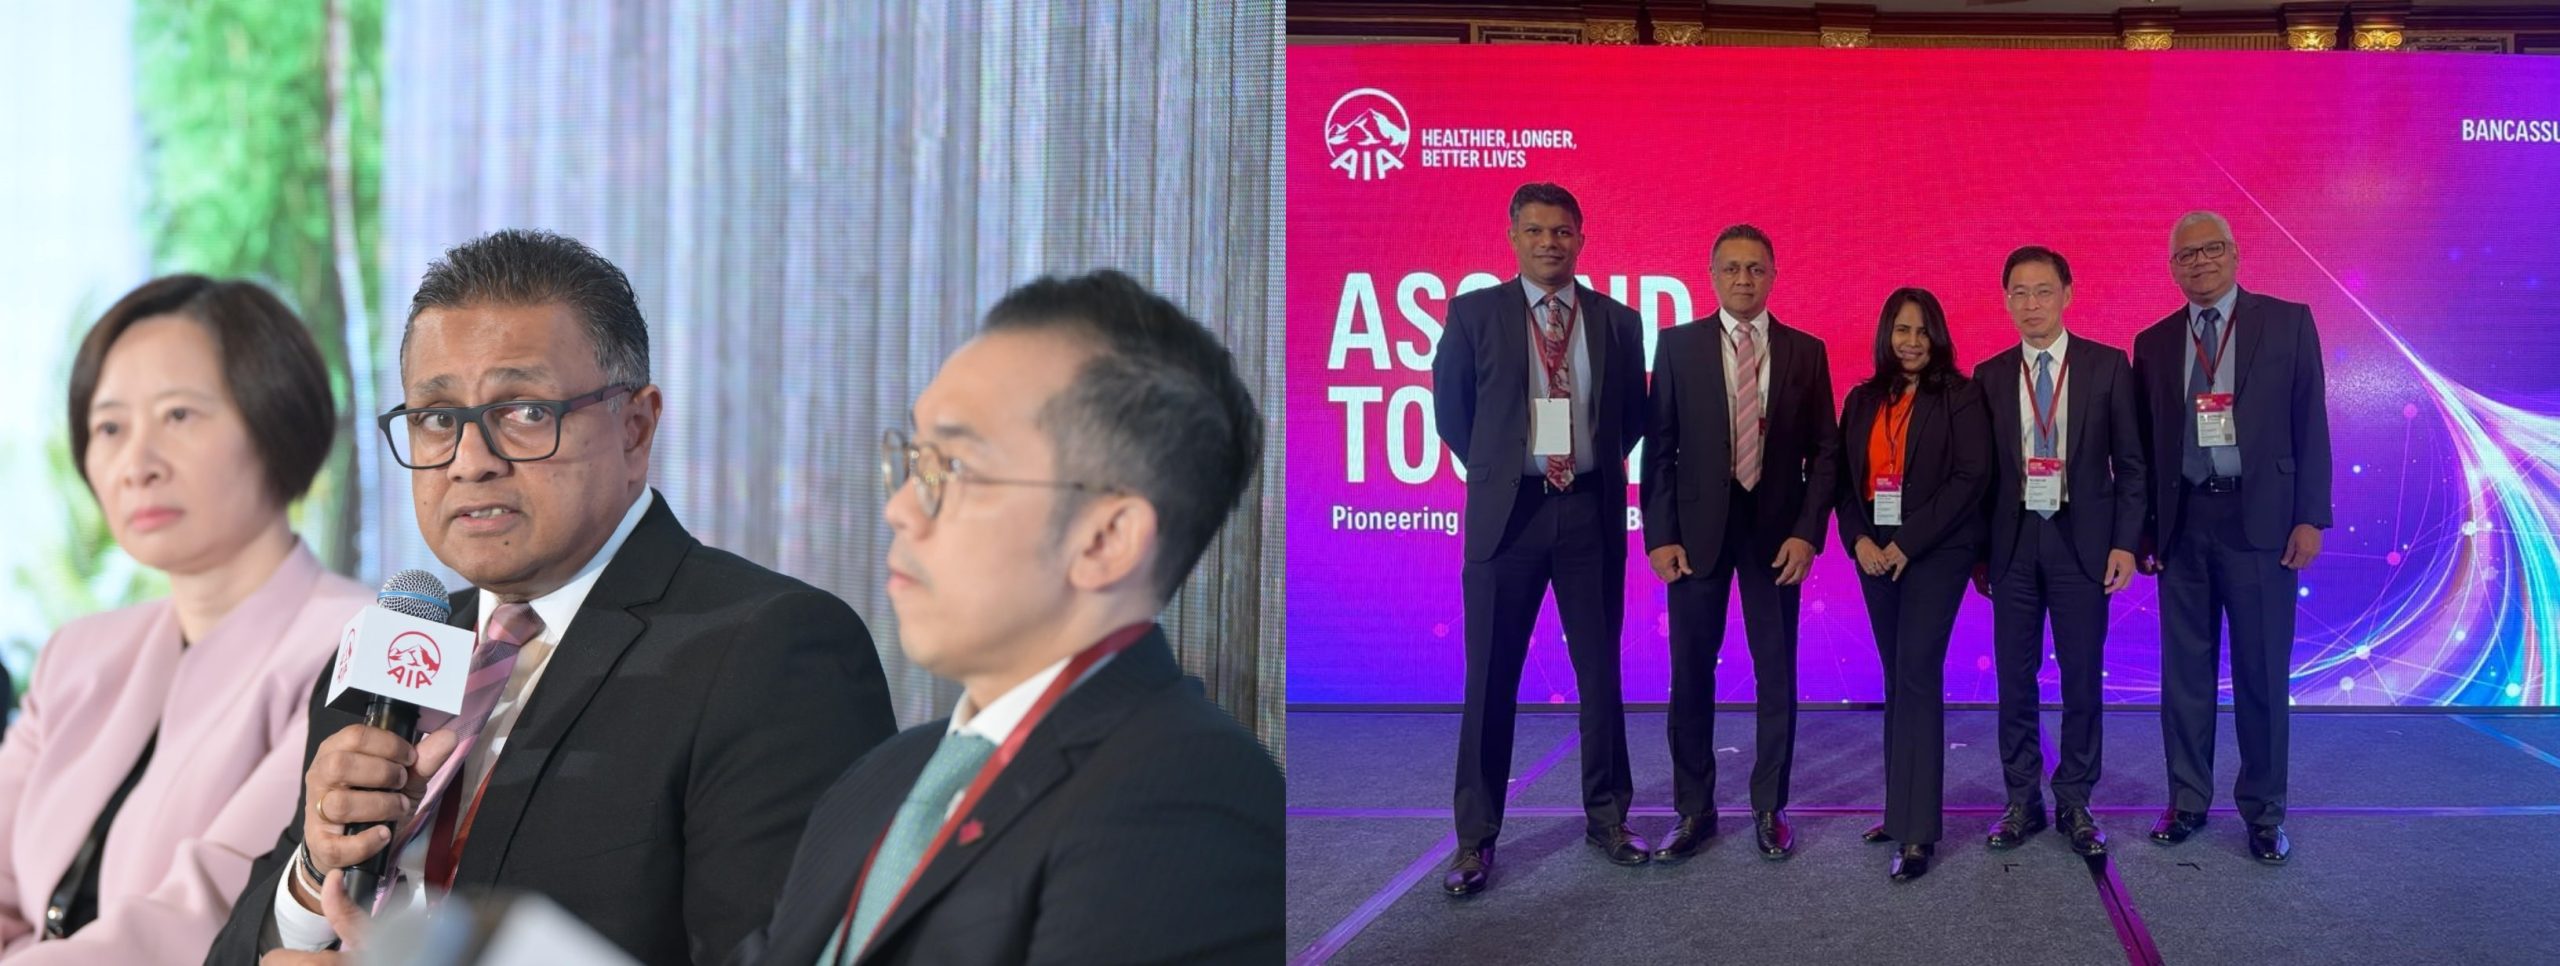 AIA APAC Bancassurance Summit in Hong Kong: Shaping Tomorrow’s Banking Partnerships